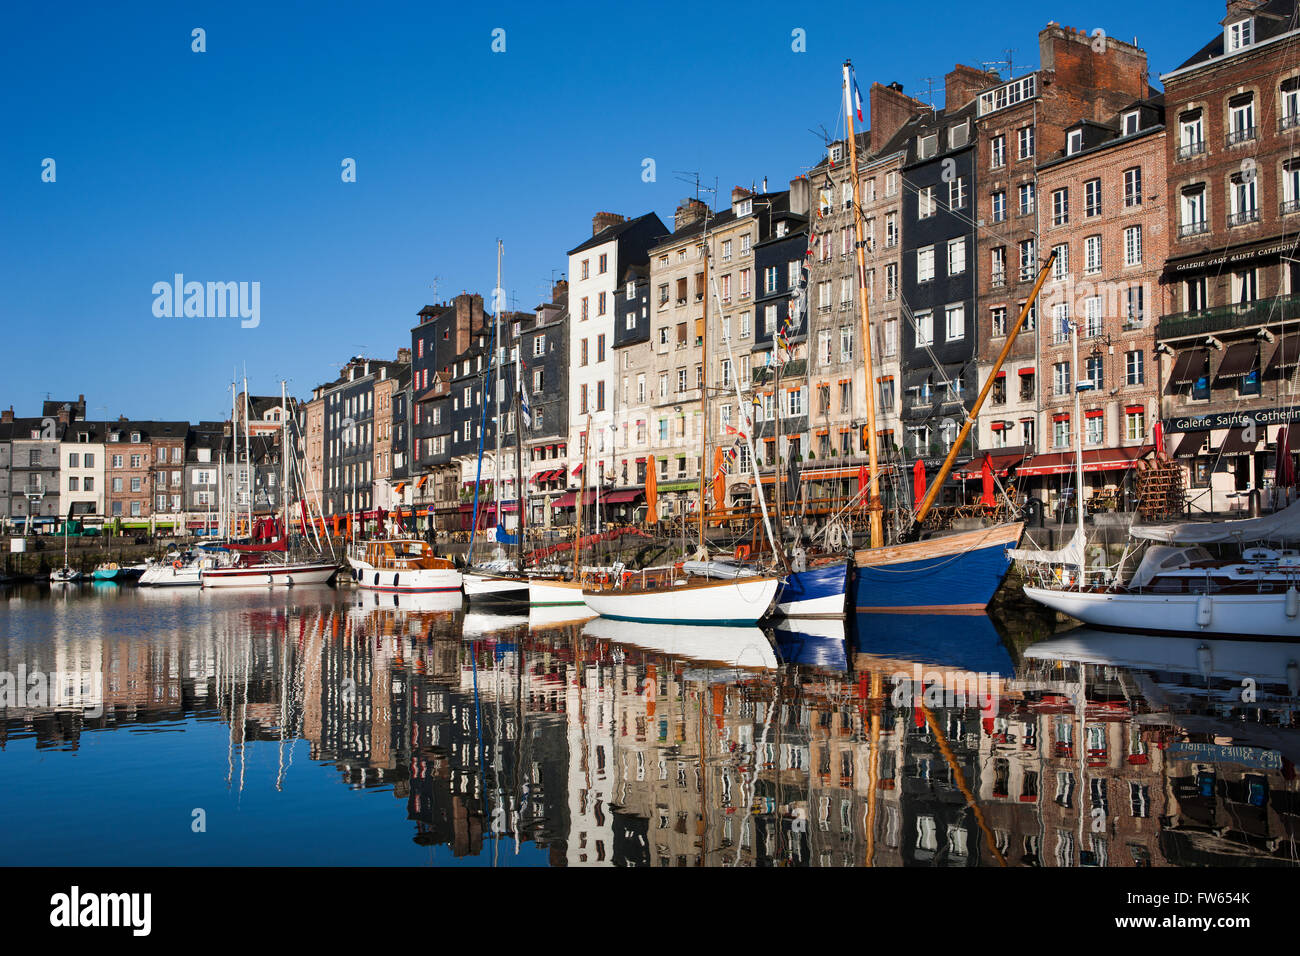 Häuser und Boote am alten Hafen mit Reflexionen in ruhigem Wasser, Vieux Bassin, Honfleur, Calvados, Normandie, Frankreich Stockfoto